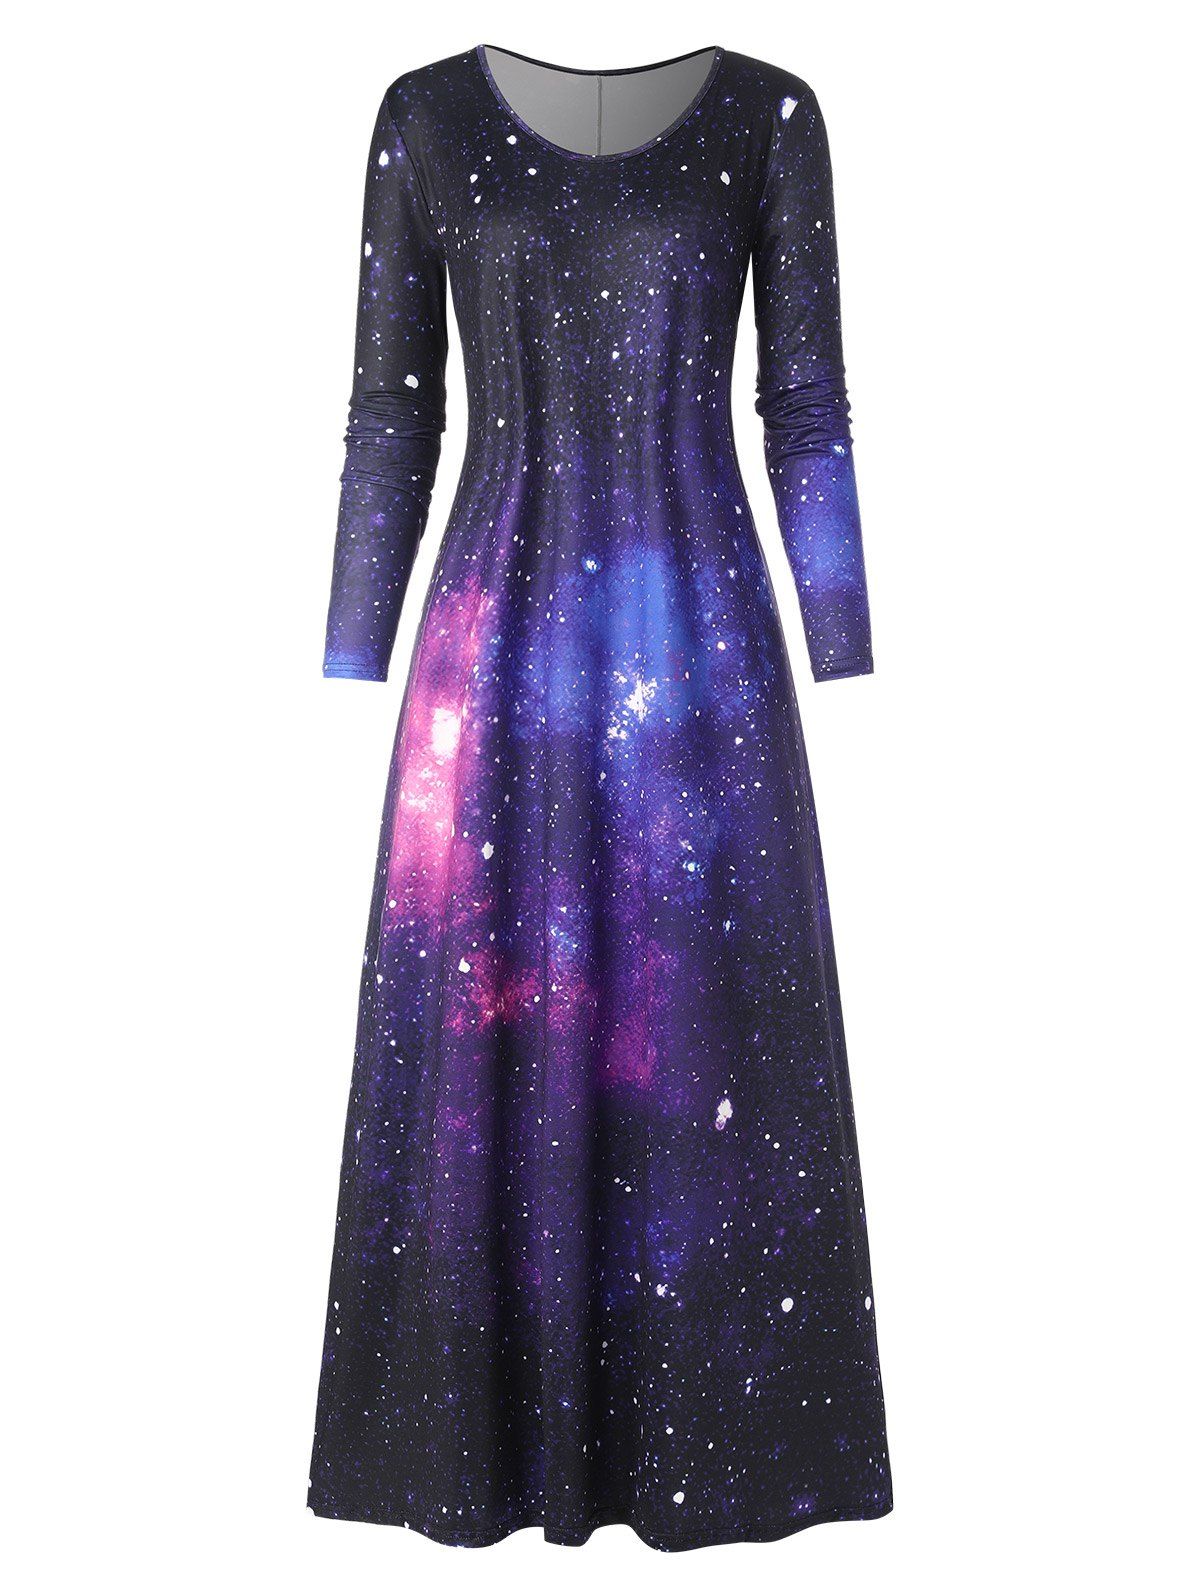 Robe Longue Galaxie à Manches Longues - multicolor L